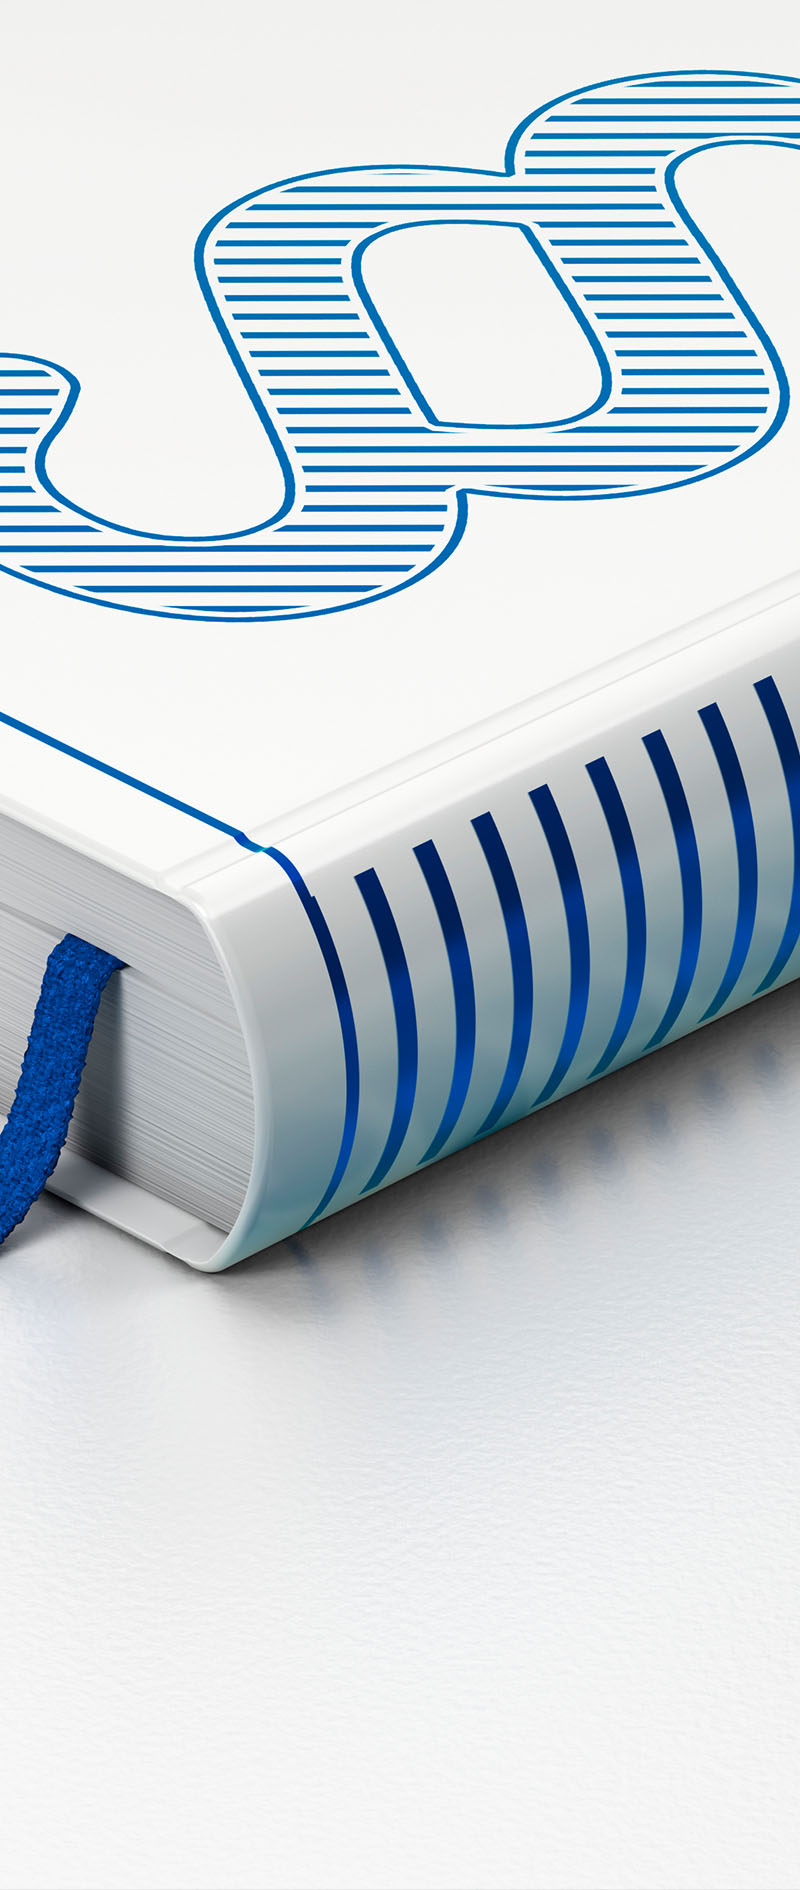 Weißes Buch mit blauem Paragraphenzeichen, Strichen und Lesezeichen